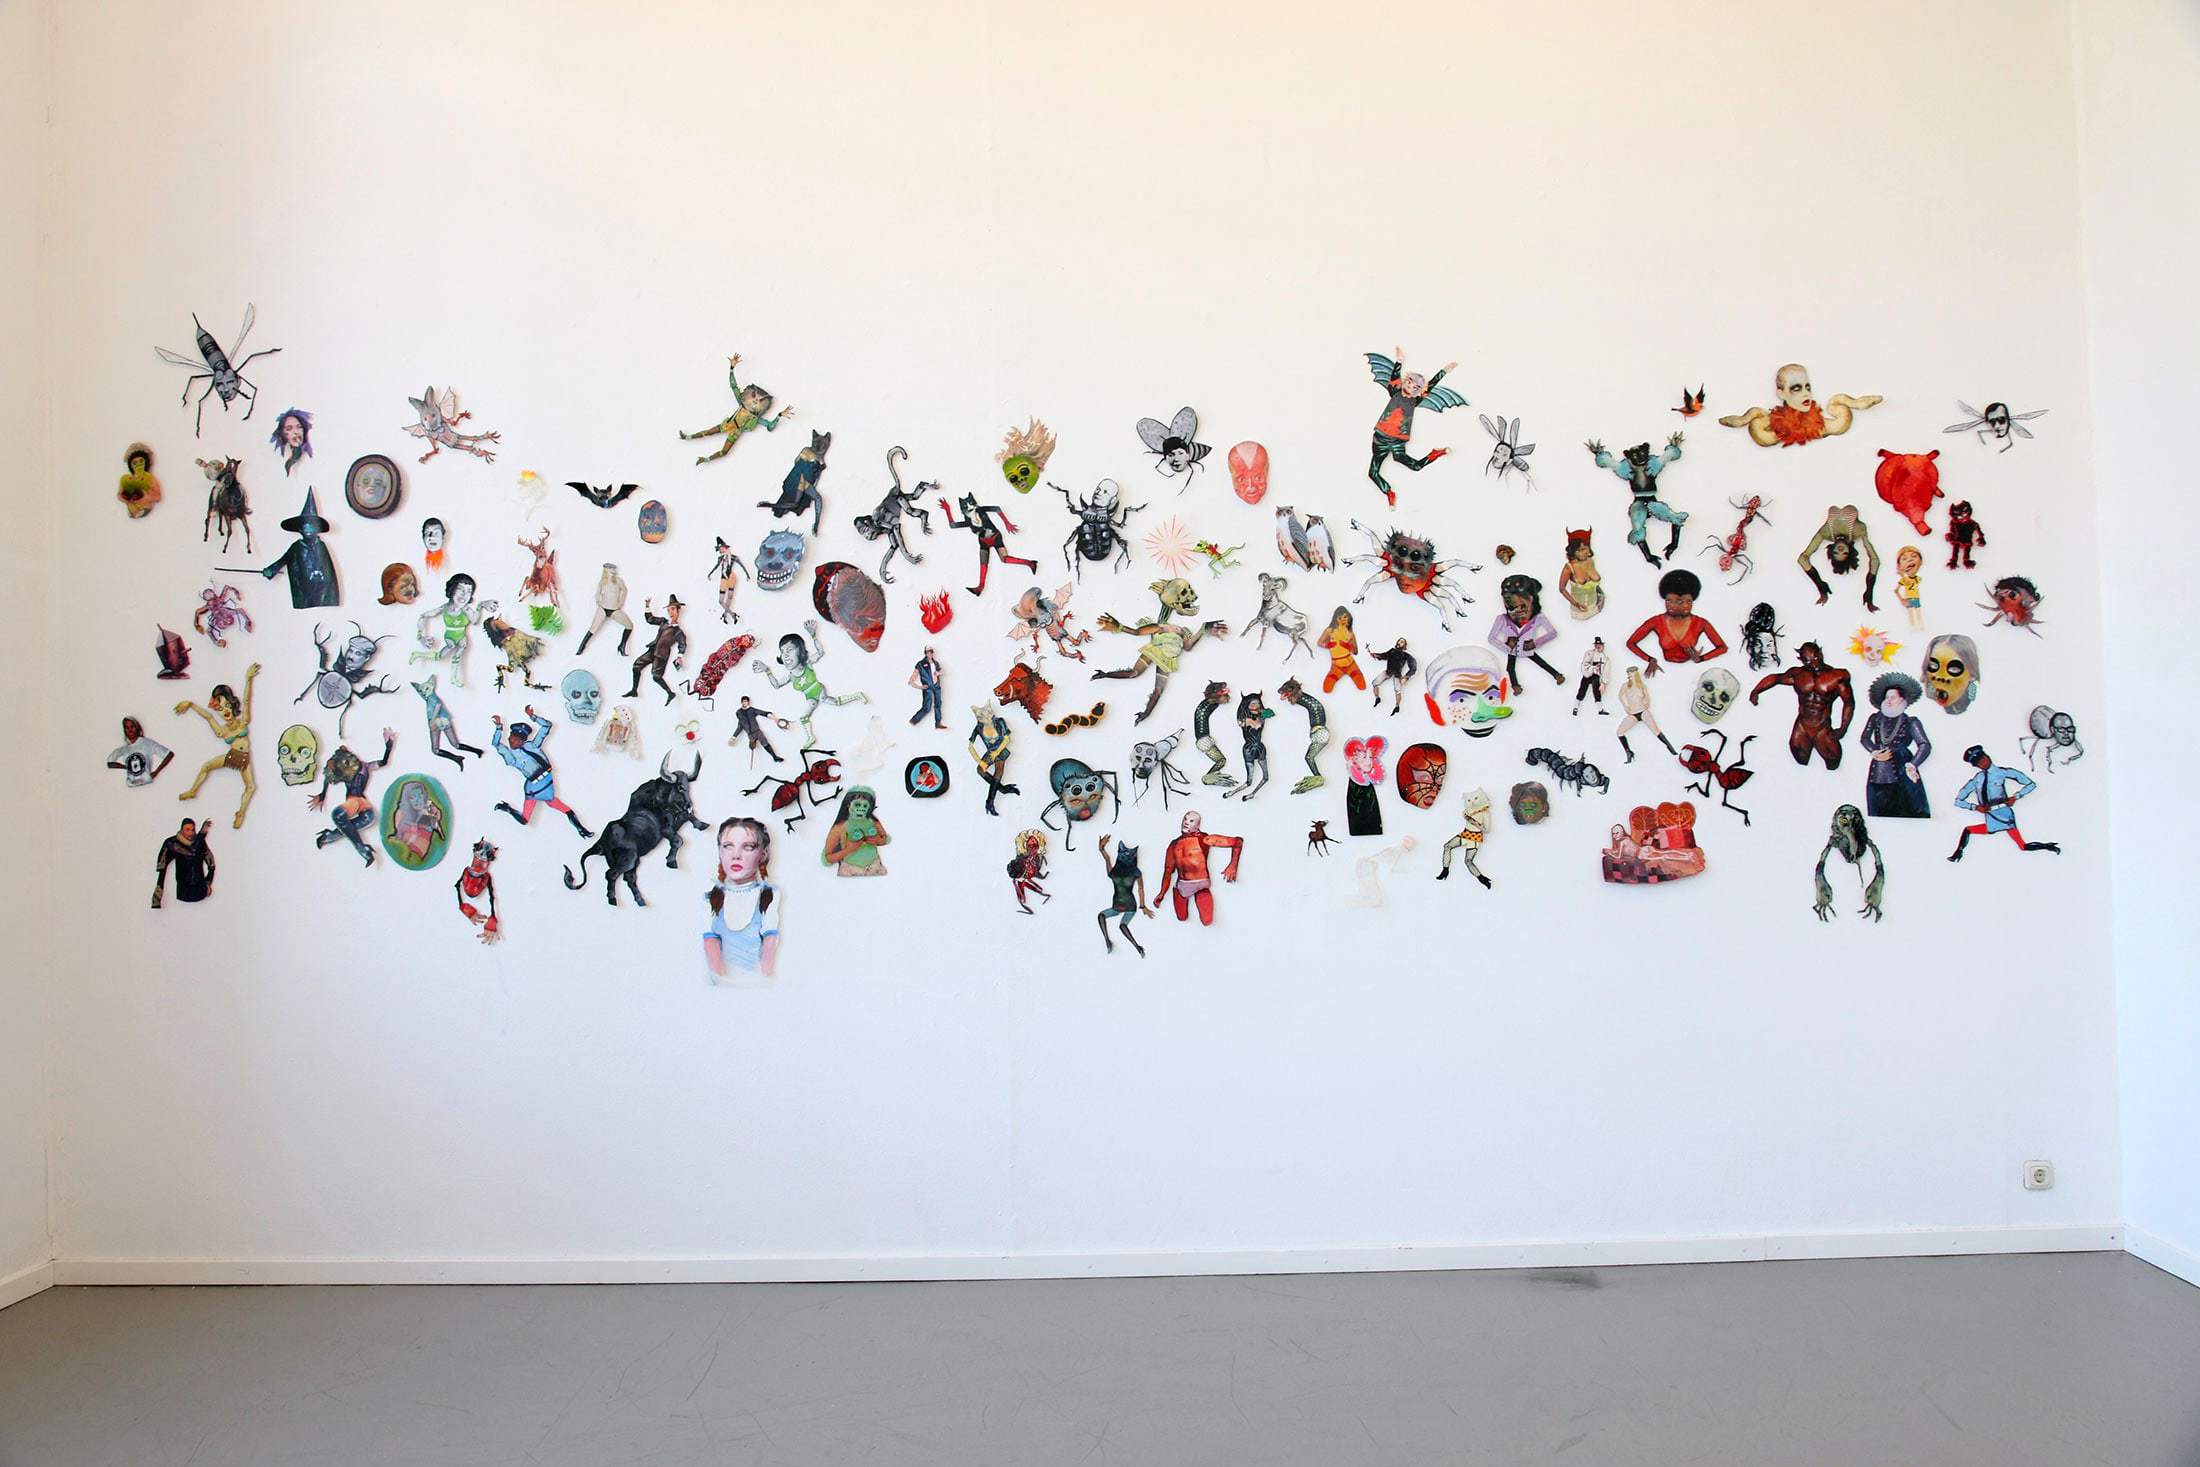 Martha Colburn – Galerie Diana Stigter (NL) 2007